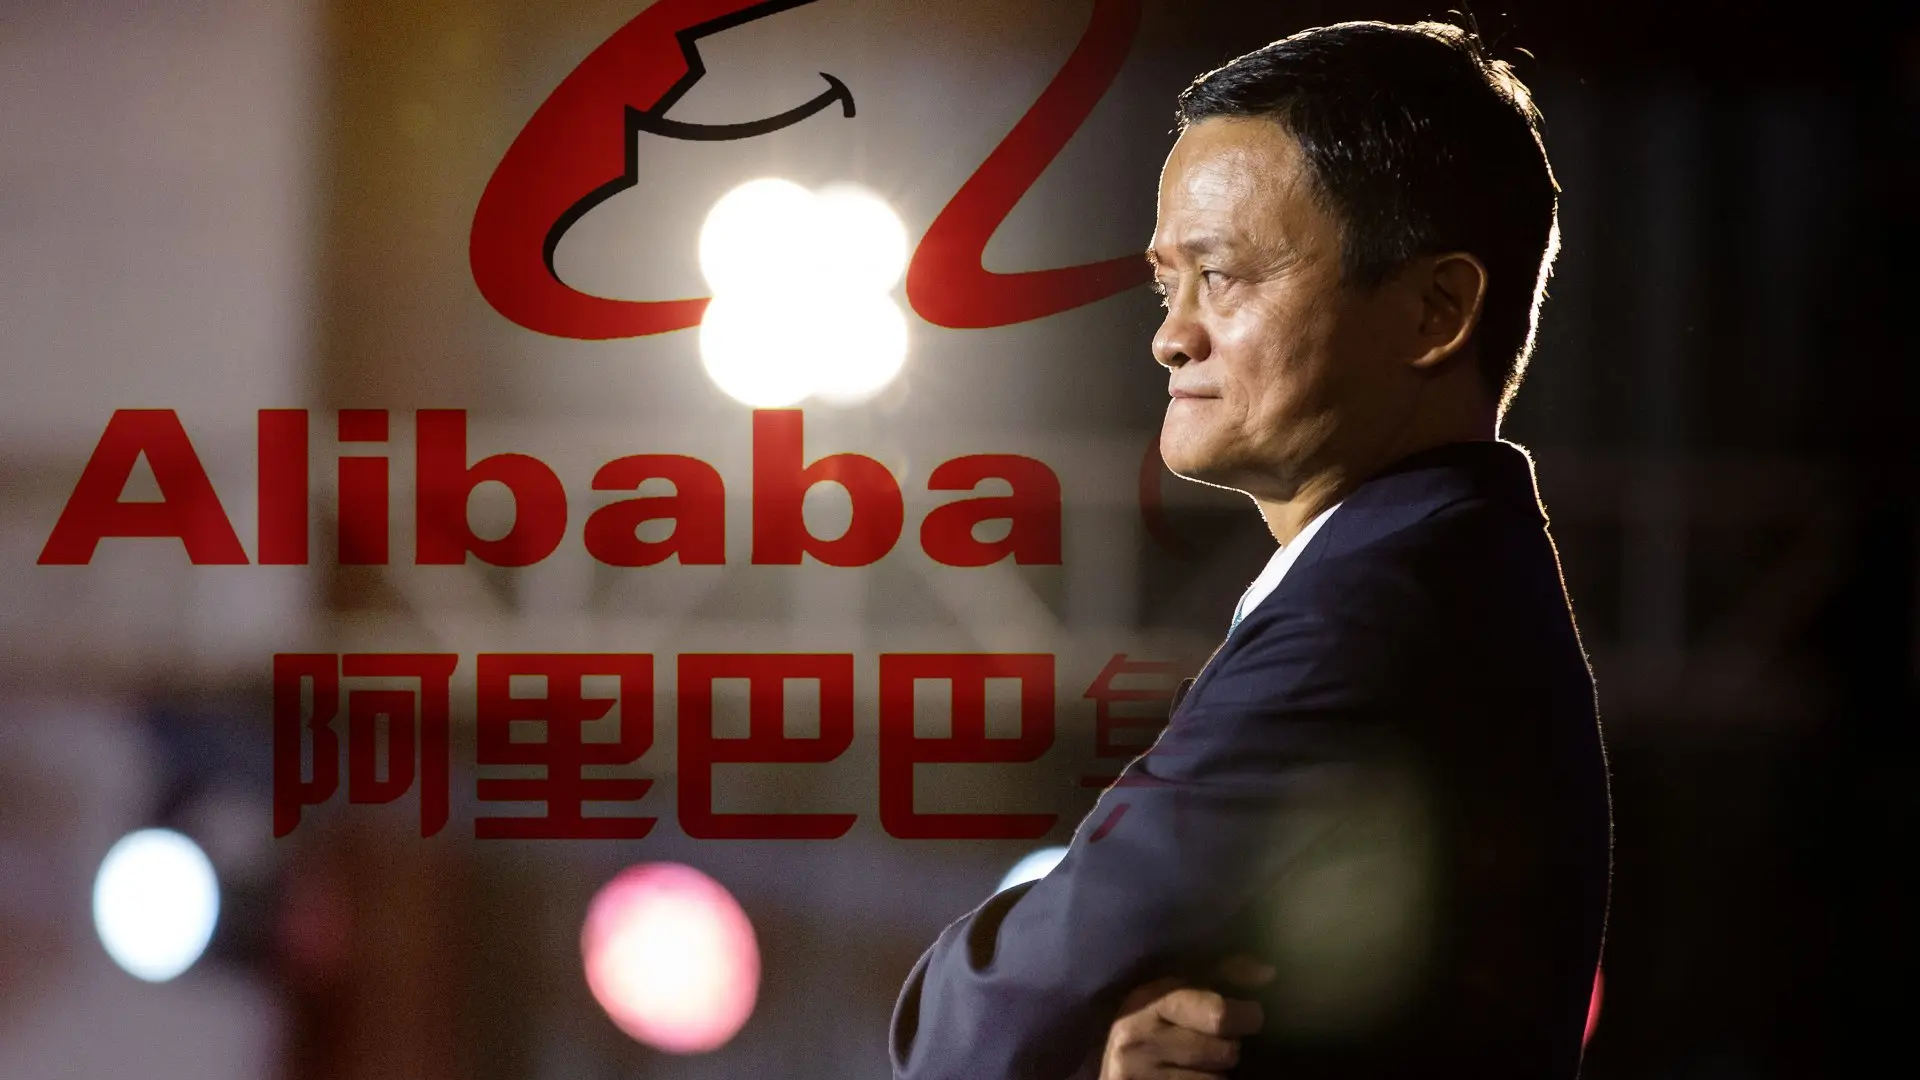 alibaba inteligencia artificial - Qué dijo Alibaba